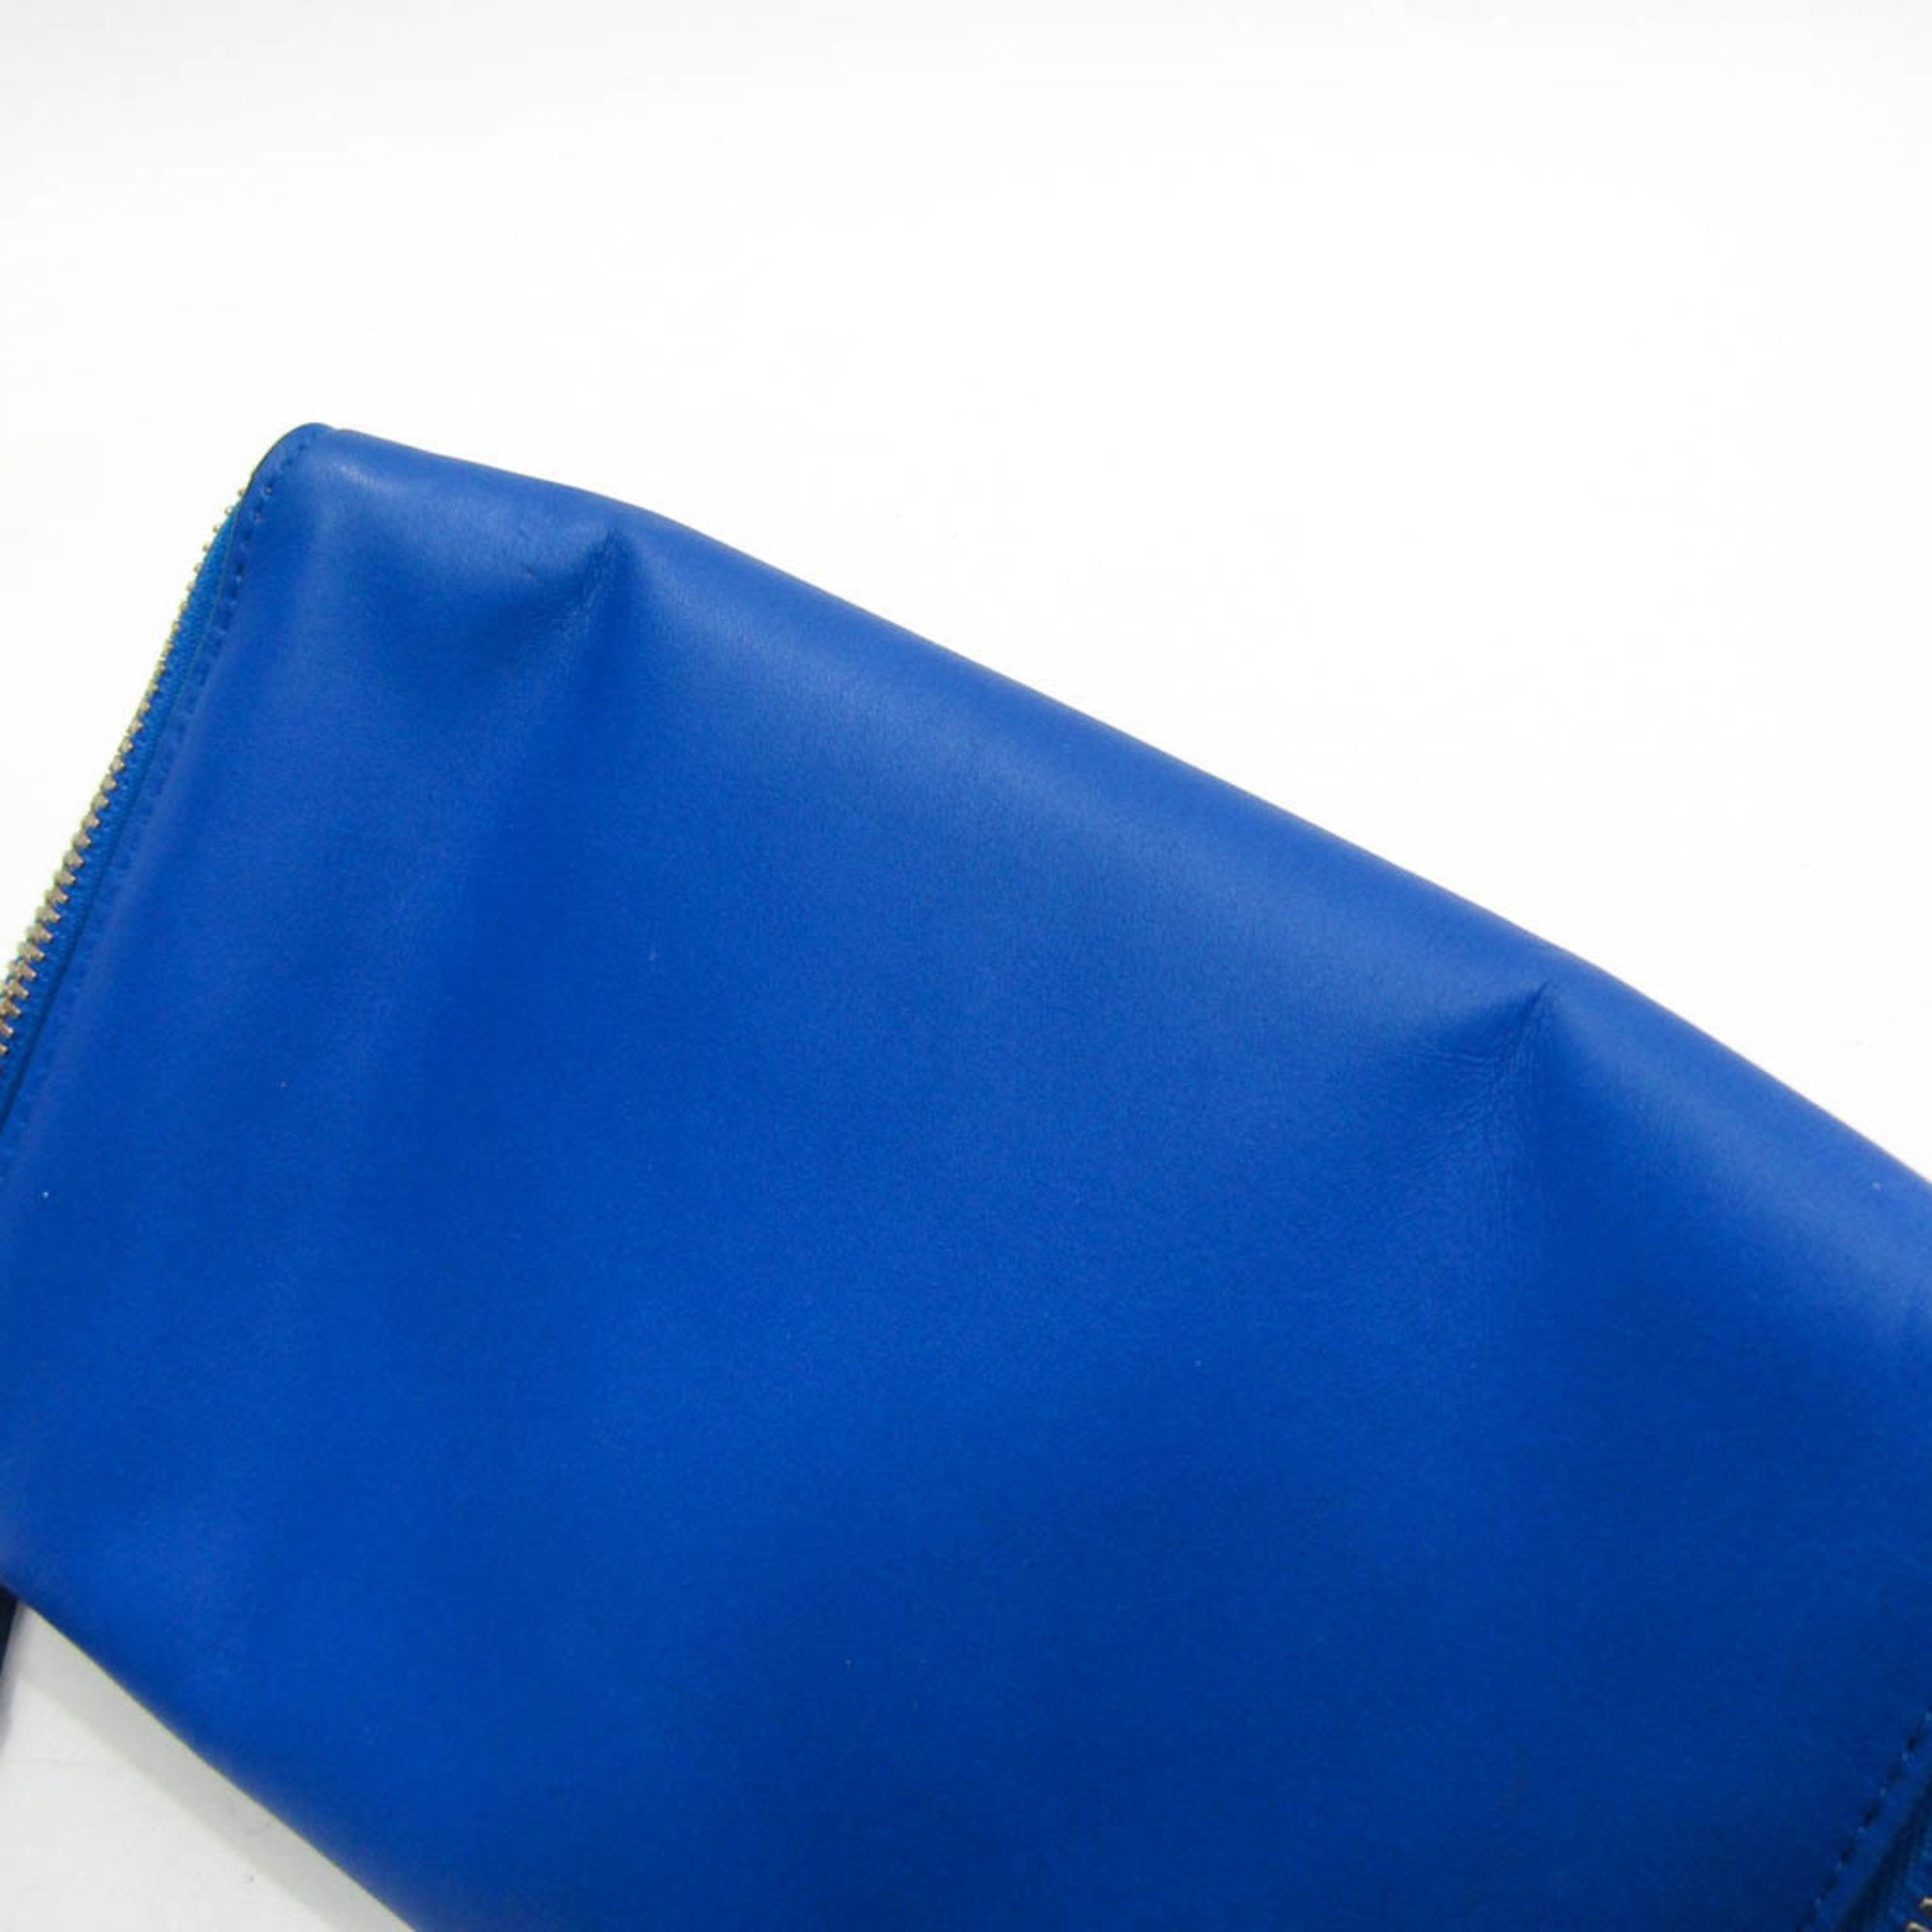 Bottega Veneta Organizer VA9V3 666770 Women's Leather Clutch Bag,Pouch Blue